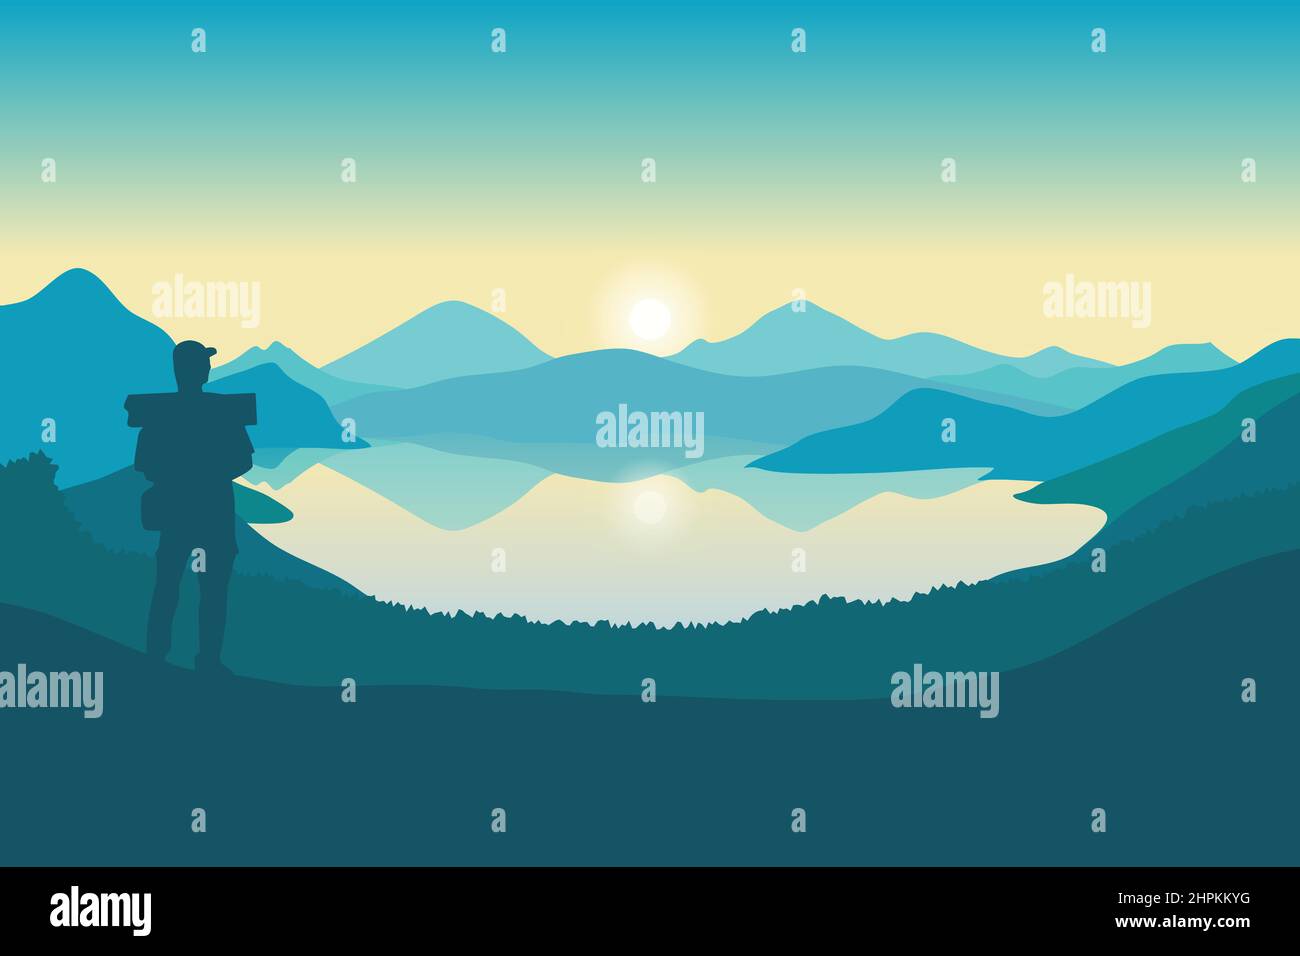 Paysage de montagne et illustration de vecteur de lac, silhouette d'un homme debout regardant le paysage naturel au lever du soleil Illustration de Vecteur